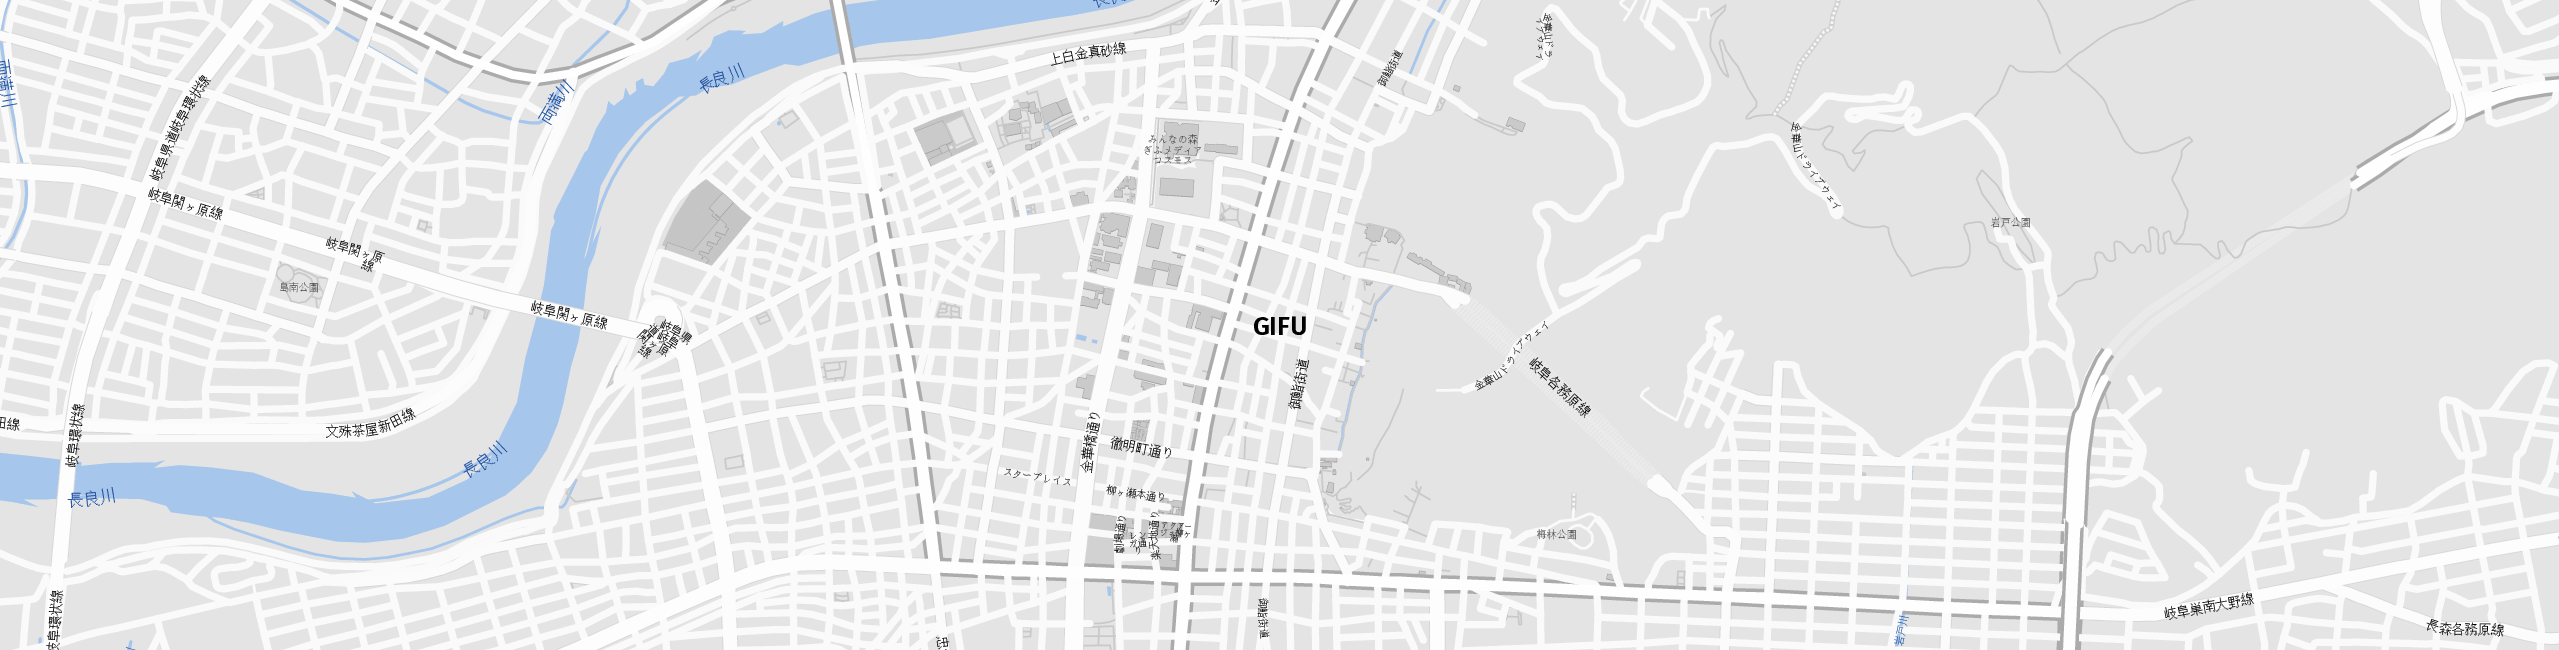 Stadtplan Gifu zum Downloaden.